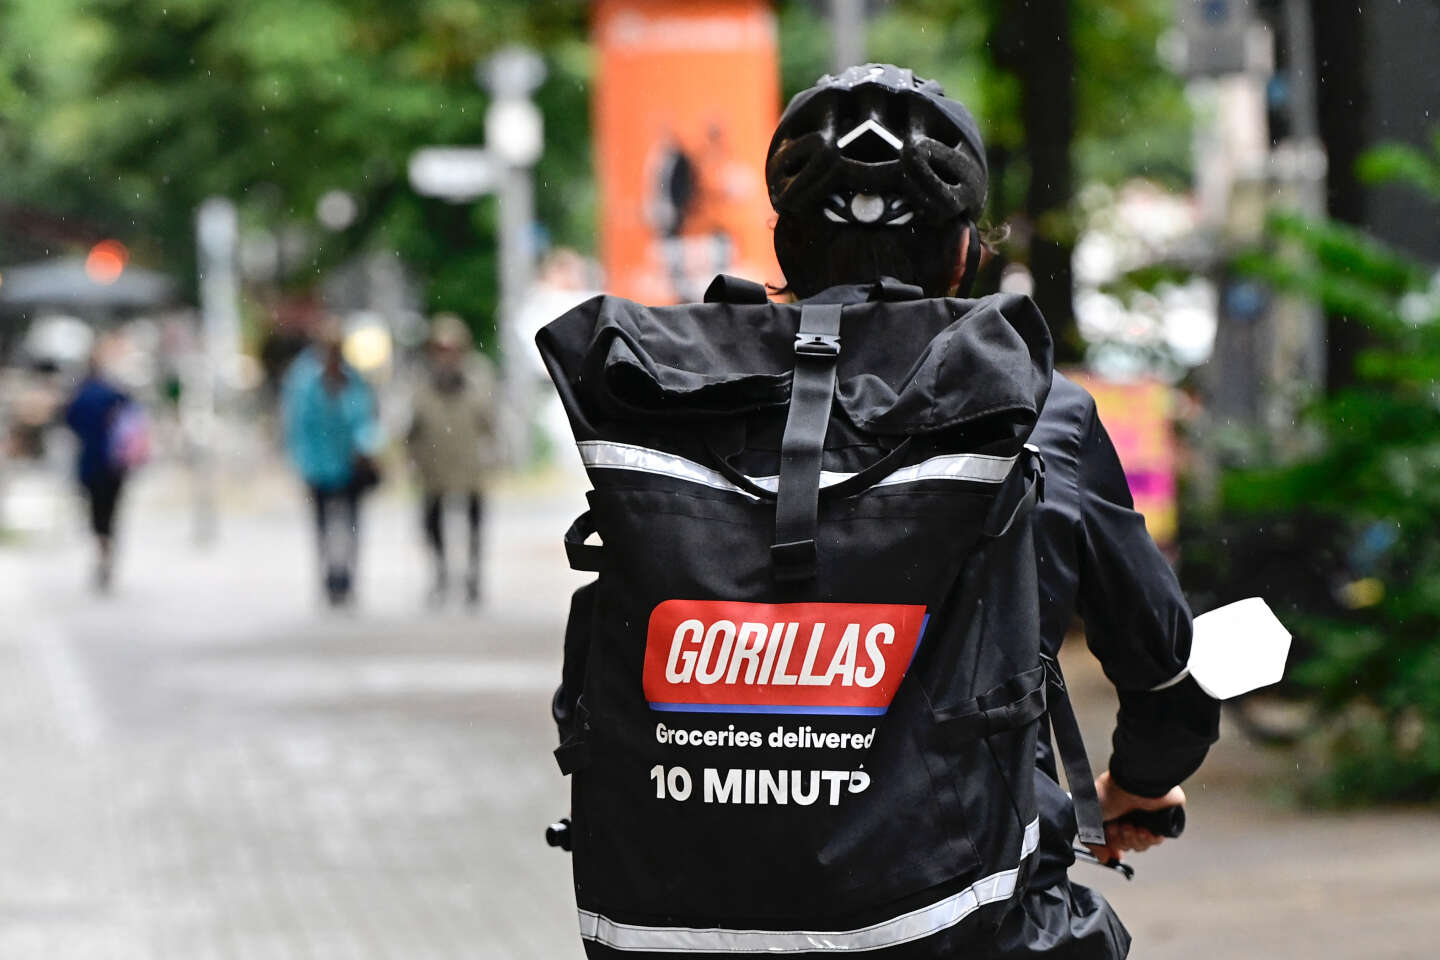 Livraison ultra-rapide : l'allemand Gorillas rachète le français Frichti